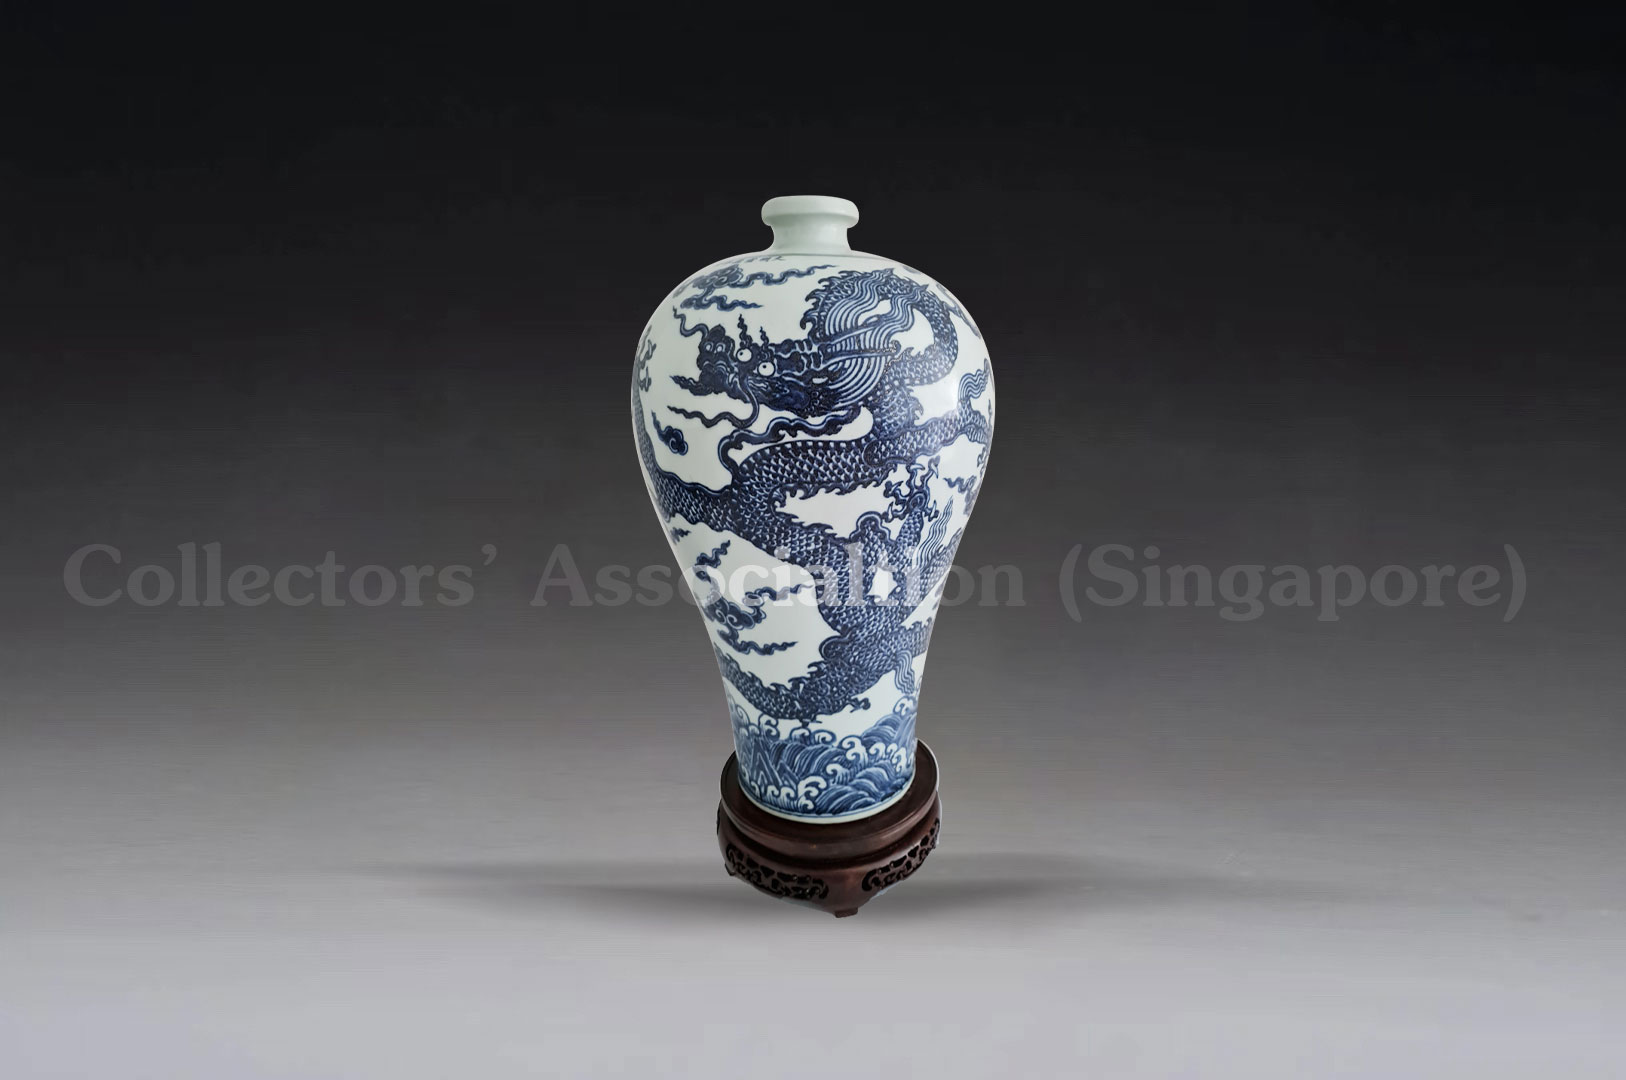 青花龙纹梅瓶– Collectors' Association (Singapore)